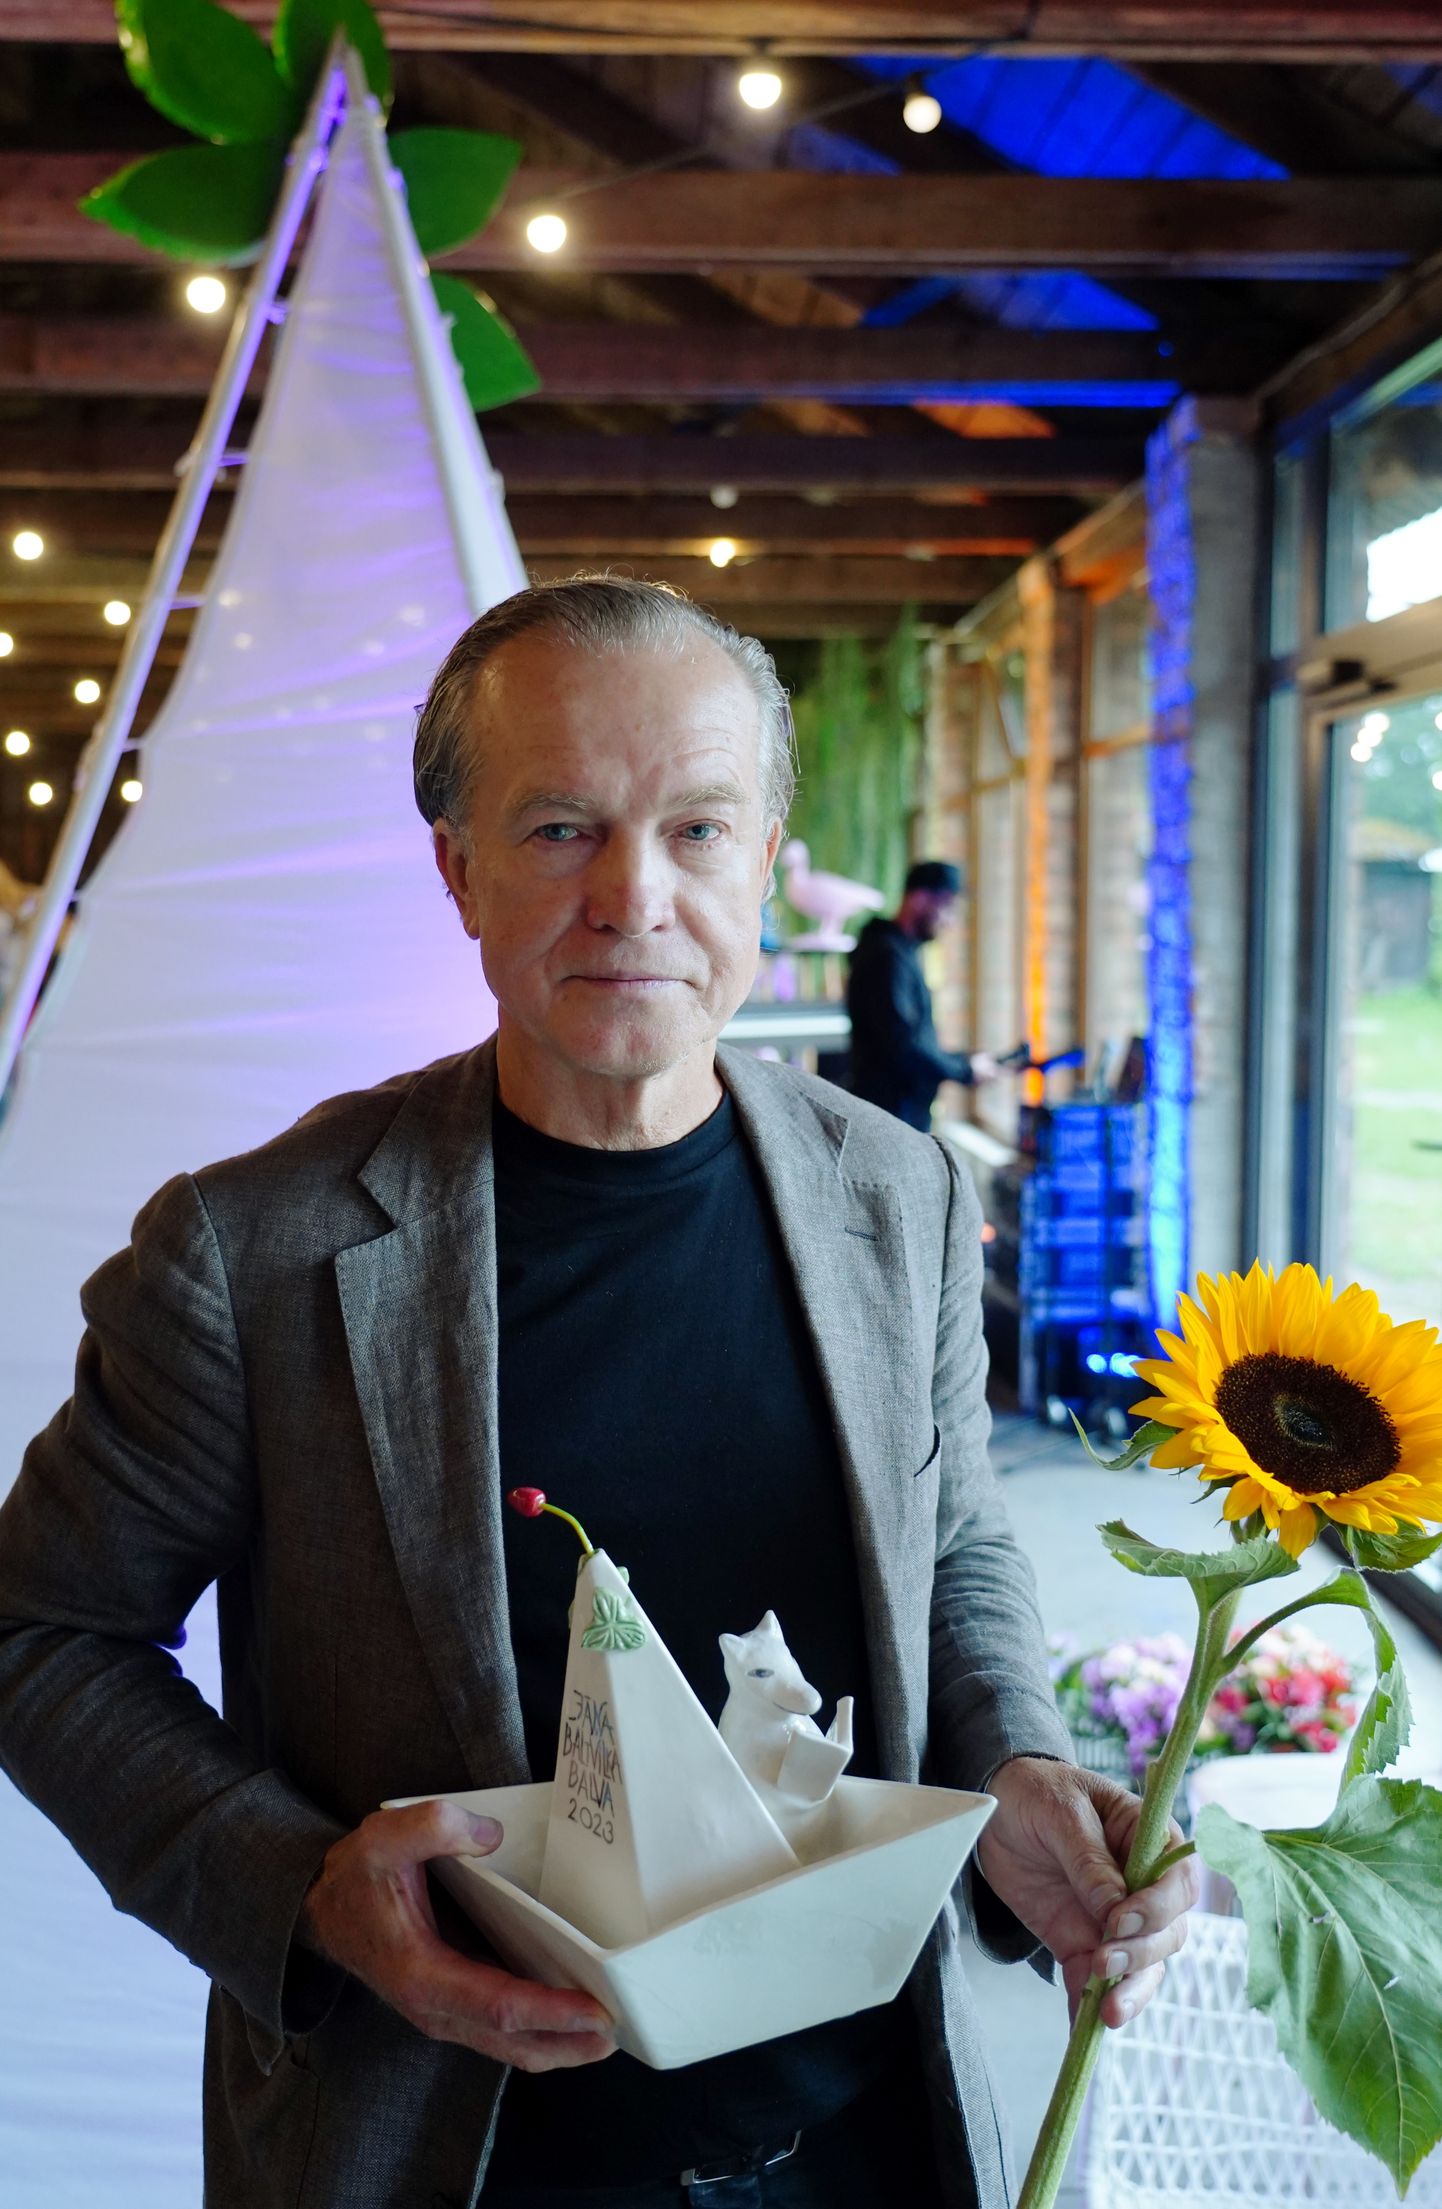 Jāņa Baltvilka balvas rakstniecībā laureāts dzejnieks Žebers ar saņemto balvu par dzejoļu krājumu "Ejas un asakas" apbalvošanas ceremonijas laikā Latvijas Universitātes Botāniskajā dārzā.